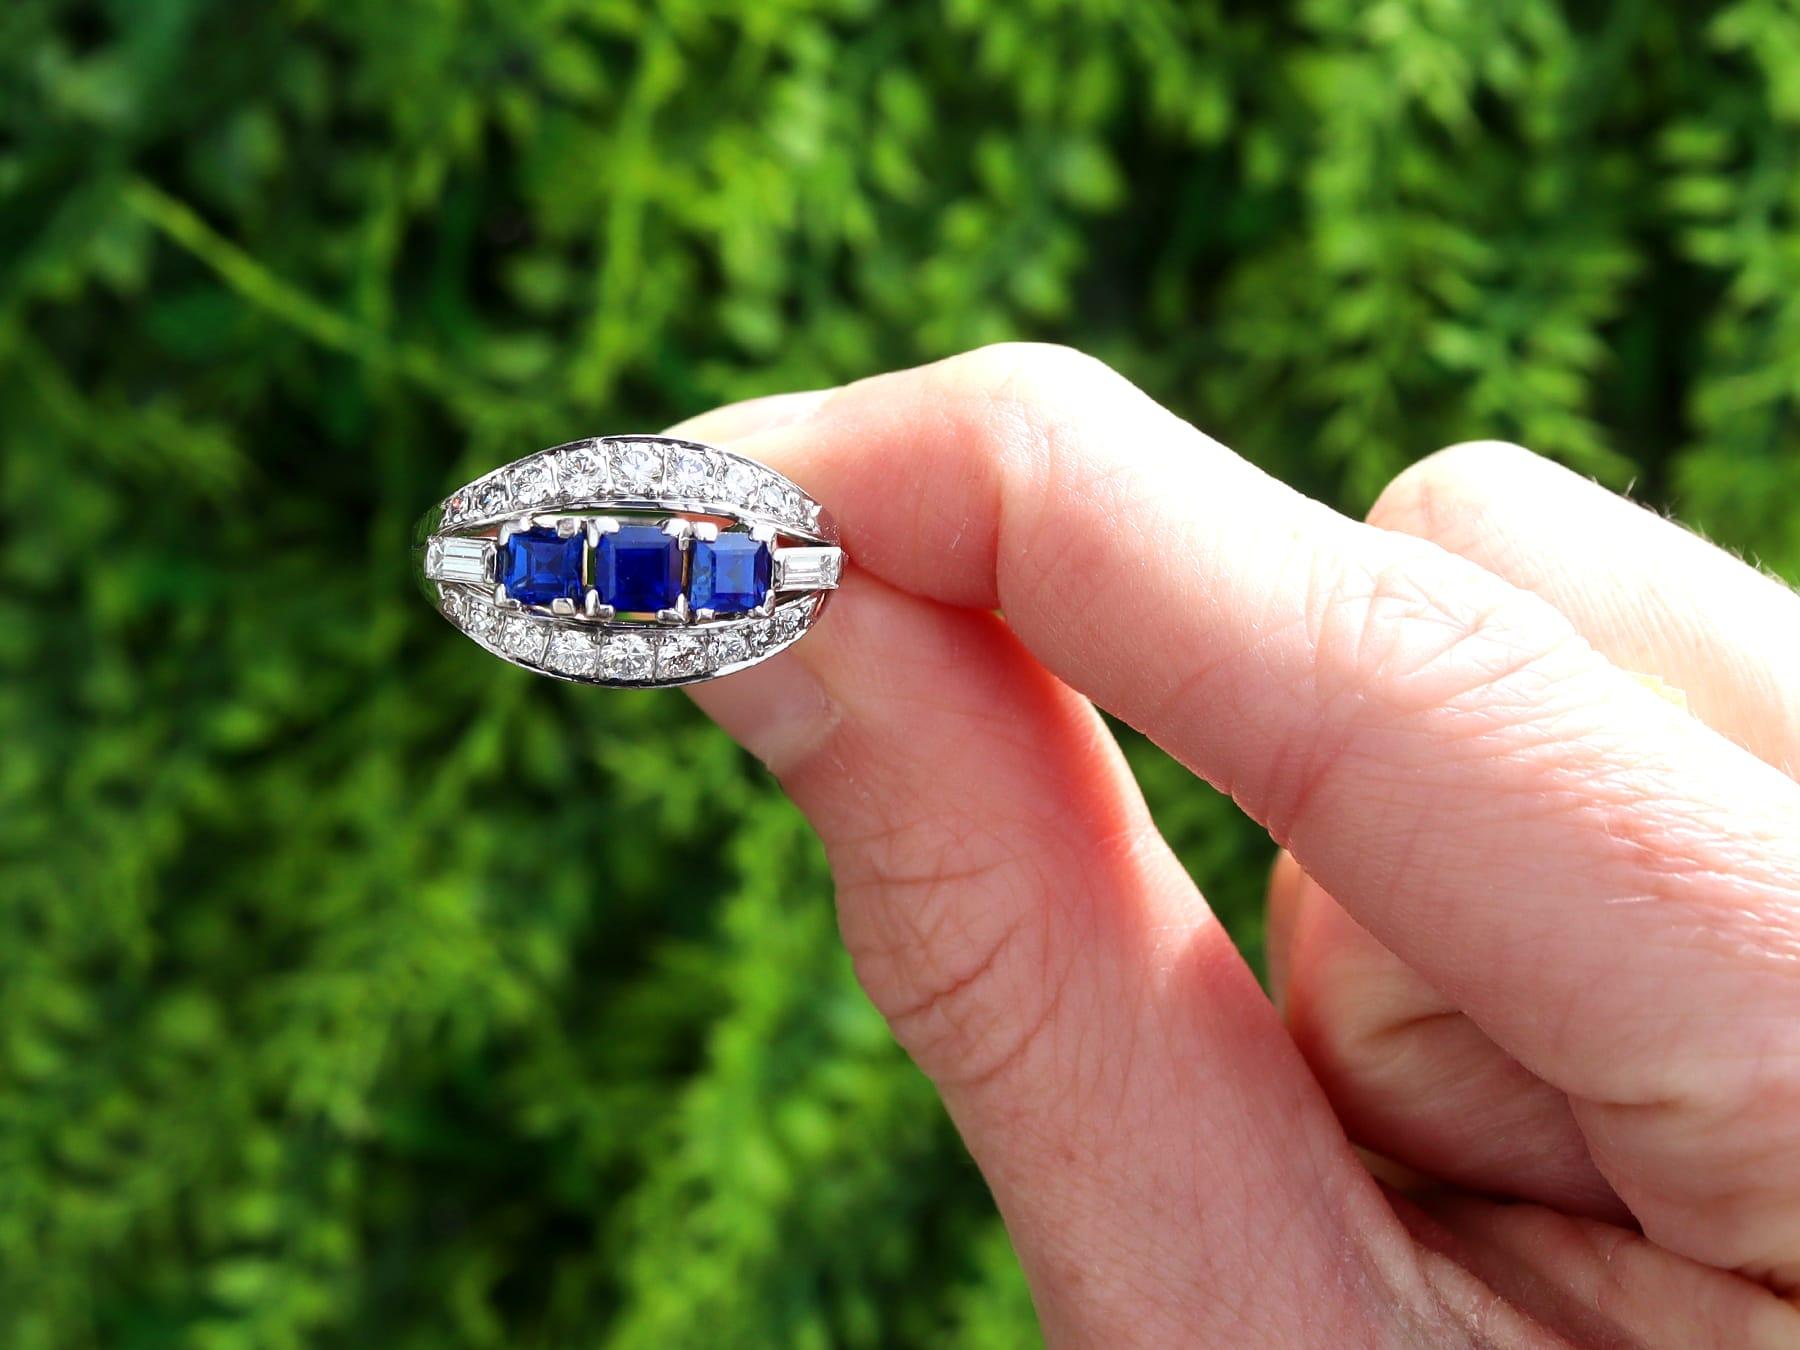 Dieser atemberaubende, feine und beeindruckende Ring mit blauem Saphir und Diamanten im Vintage-Stil wurde aus 18 Karat Weißgold gefertigt.

Die durchbrochene, verzierte Ringfassung ist mit drei blauen Saphiren mit quadratischem Facettenschliff von